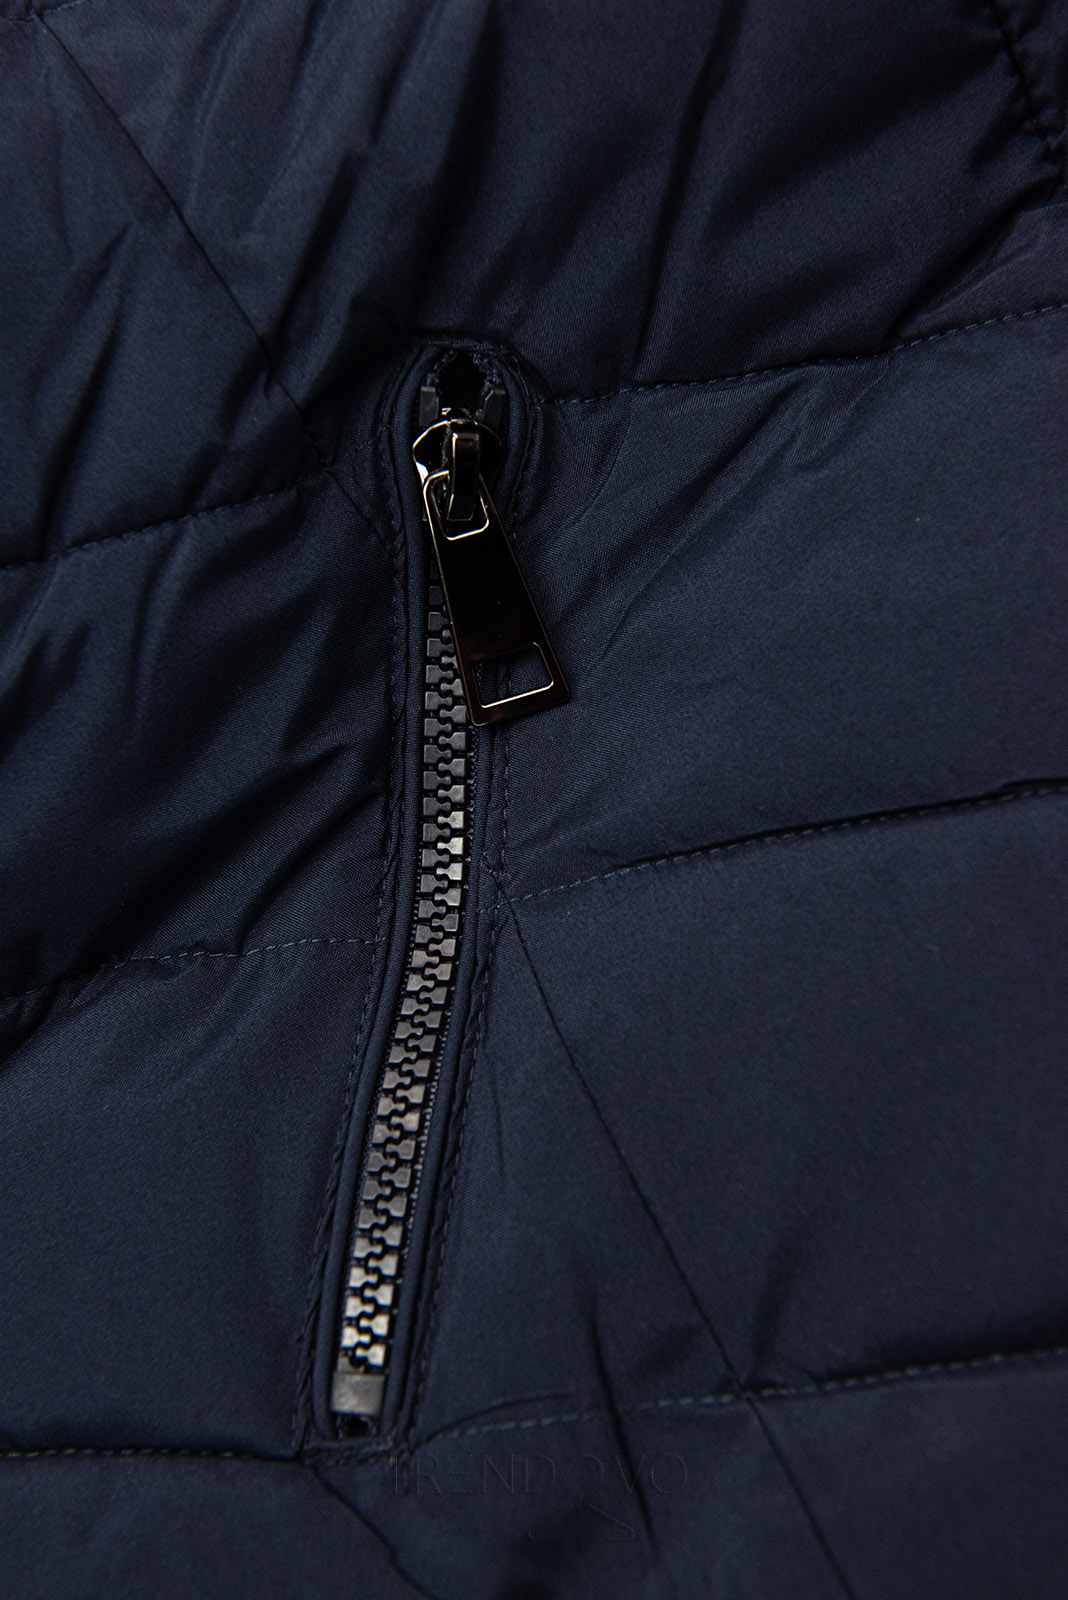 Tmavomodrá zimná bunda tvarovaná pre širšie boky